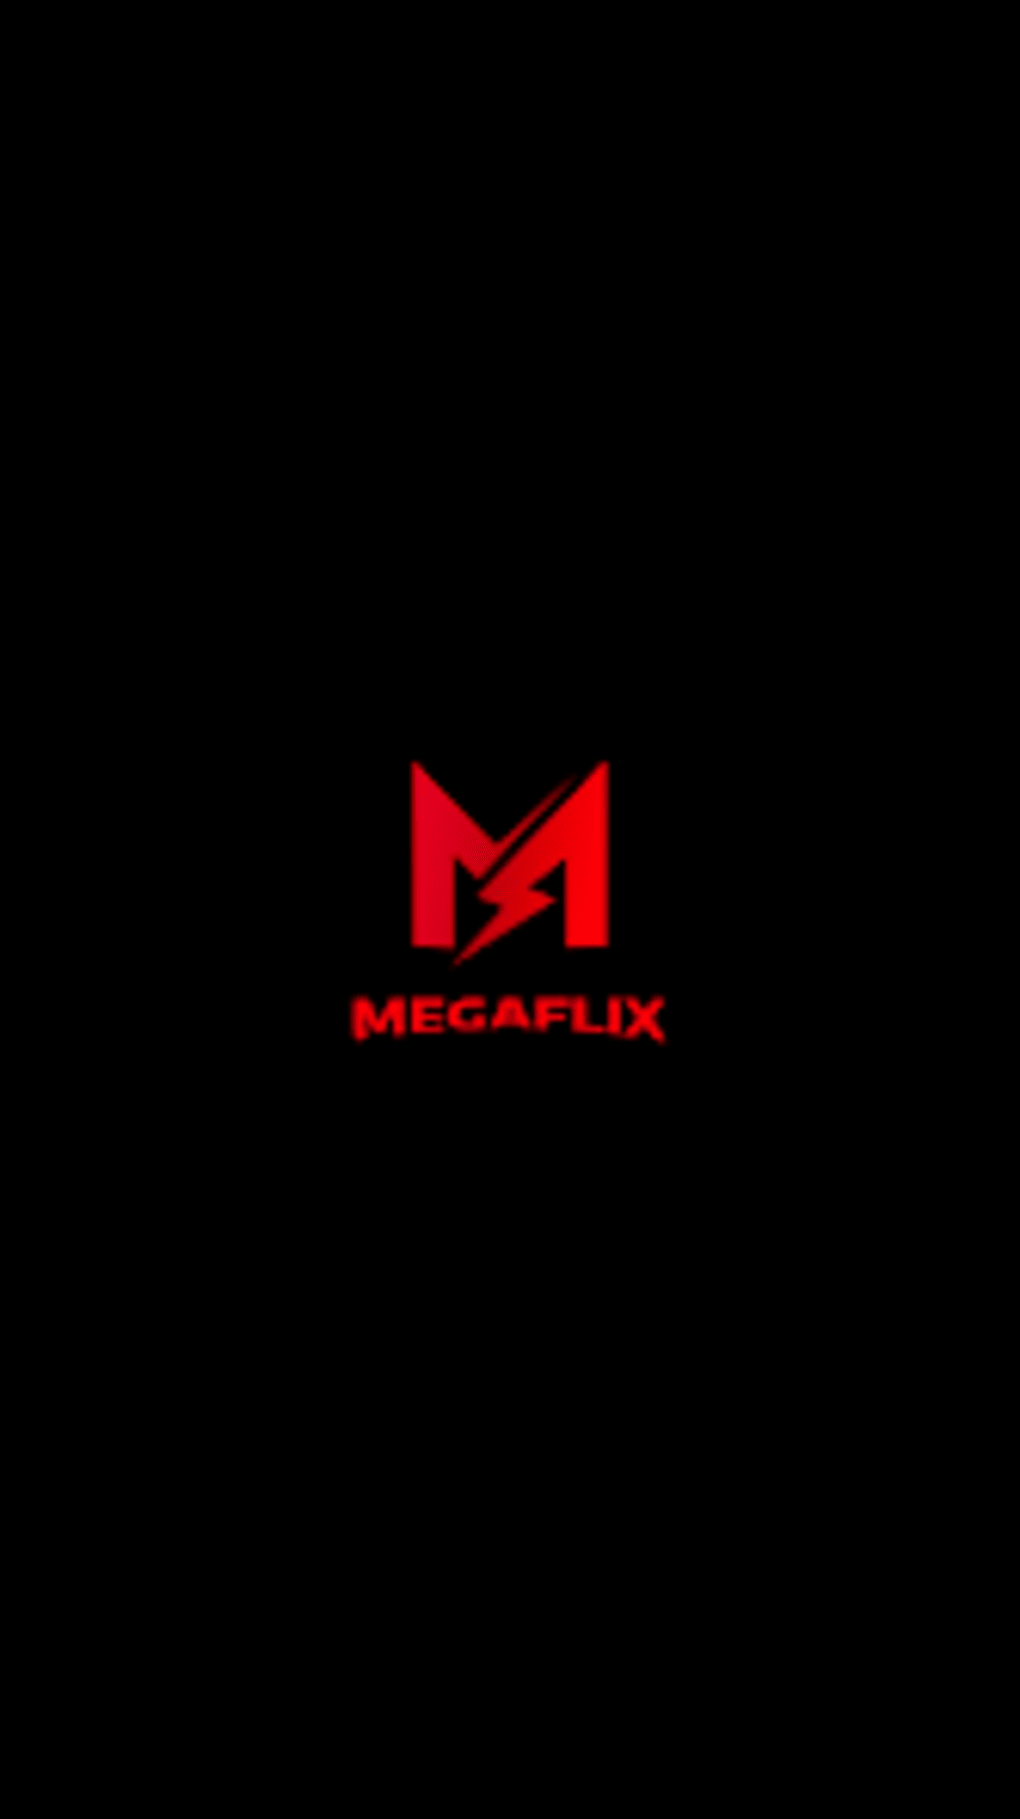 MegaFlix - Filmes e Séries para Android - Download